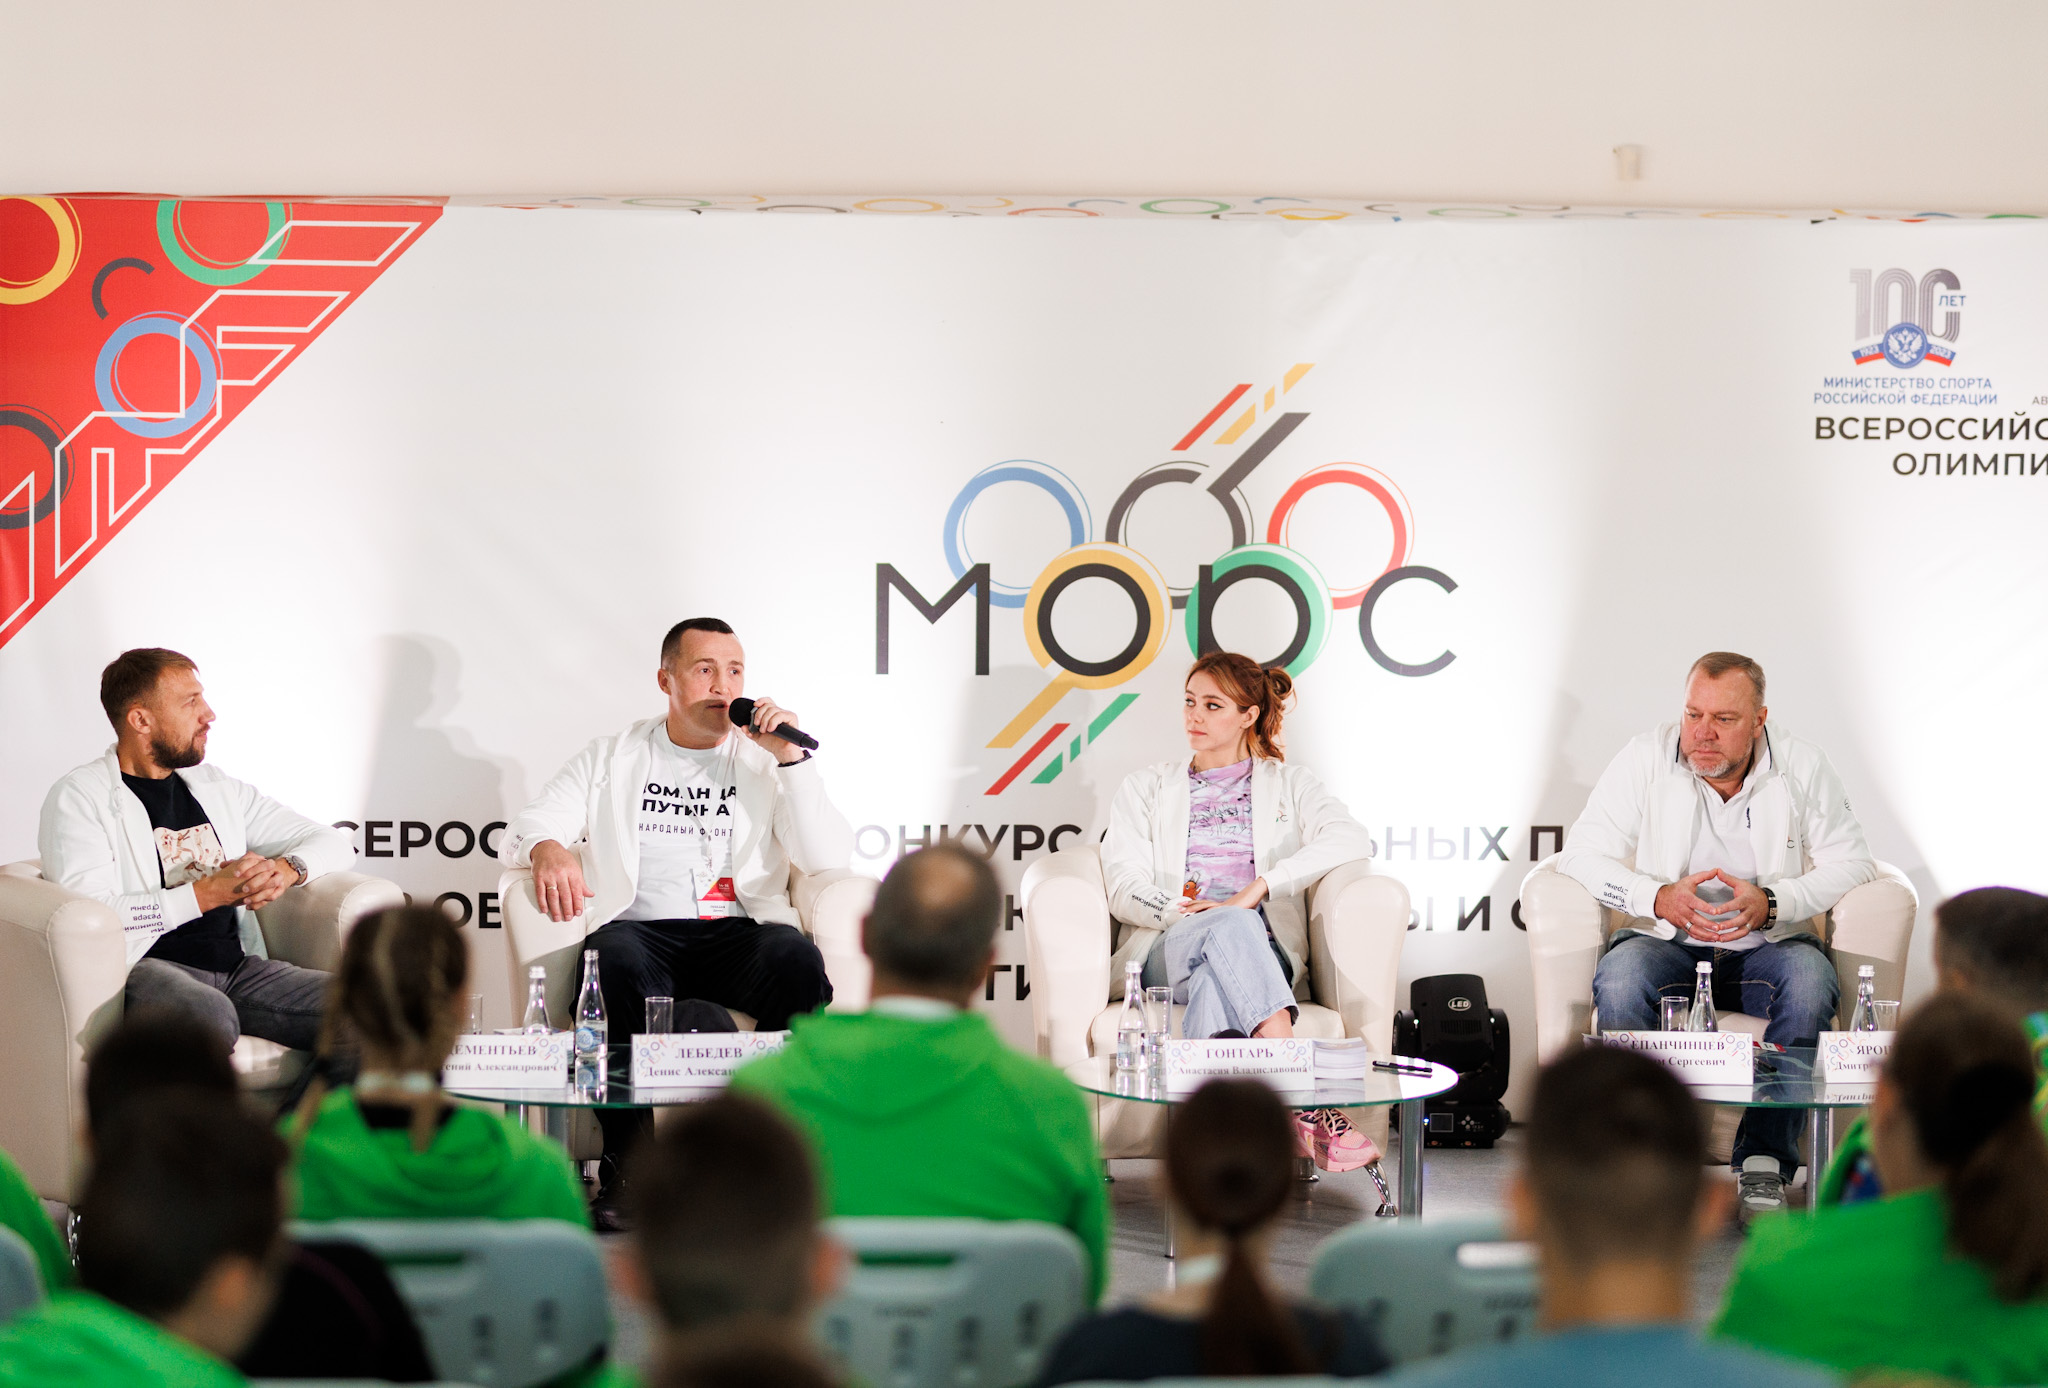 Встреча со звездами спорта на Всероссийском форуме училищ олимпийского резерва!